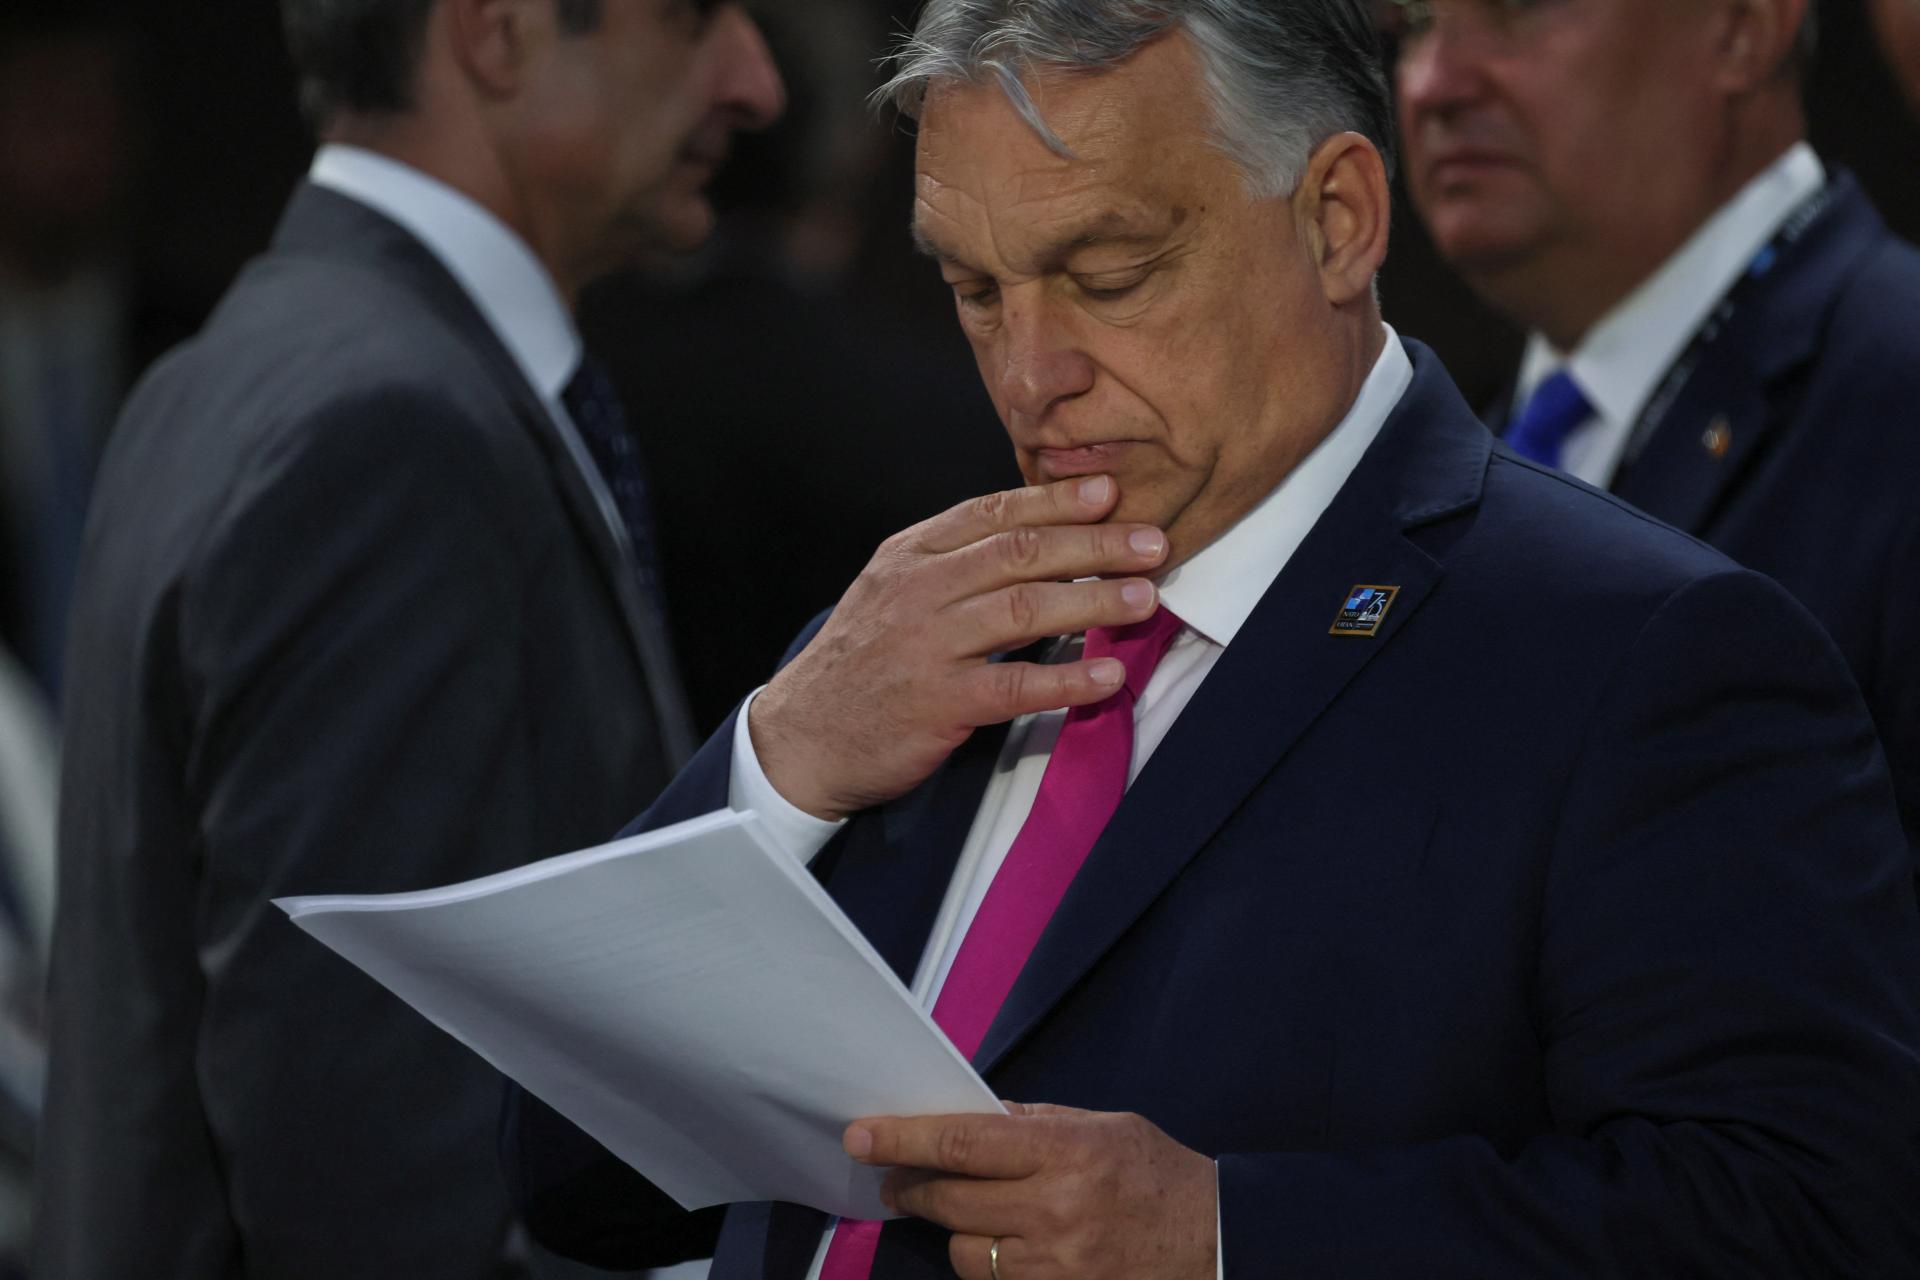 Európska únia zvažuje bojkot stretnutia ministrov zahraničných vecí v Budapešti. Dôvodom sú Orbánove cesty